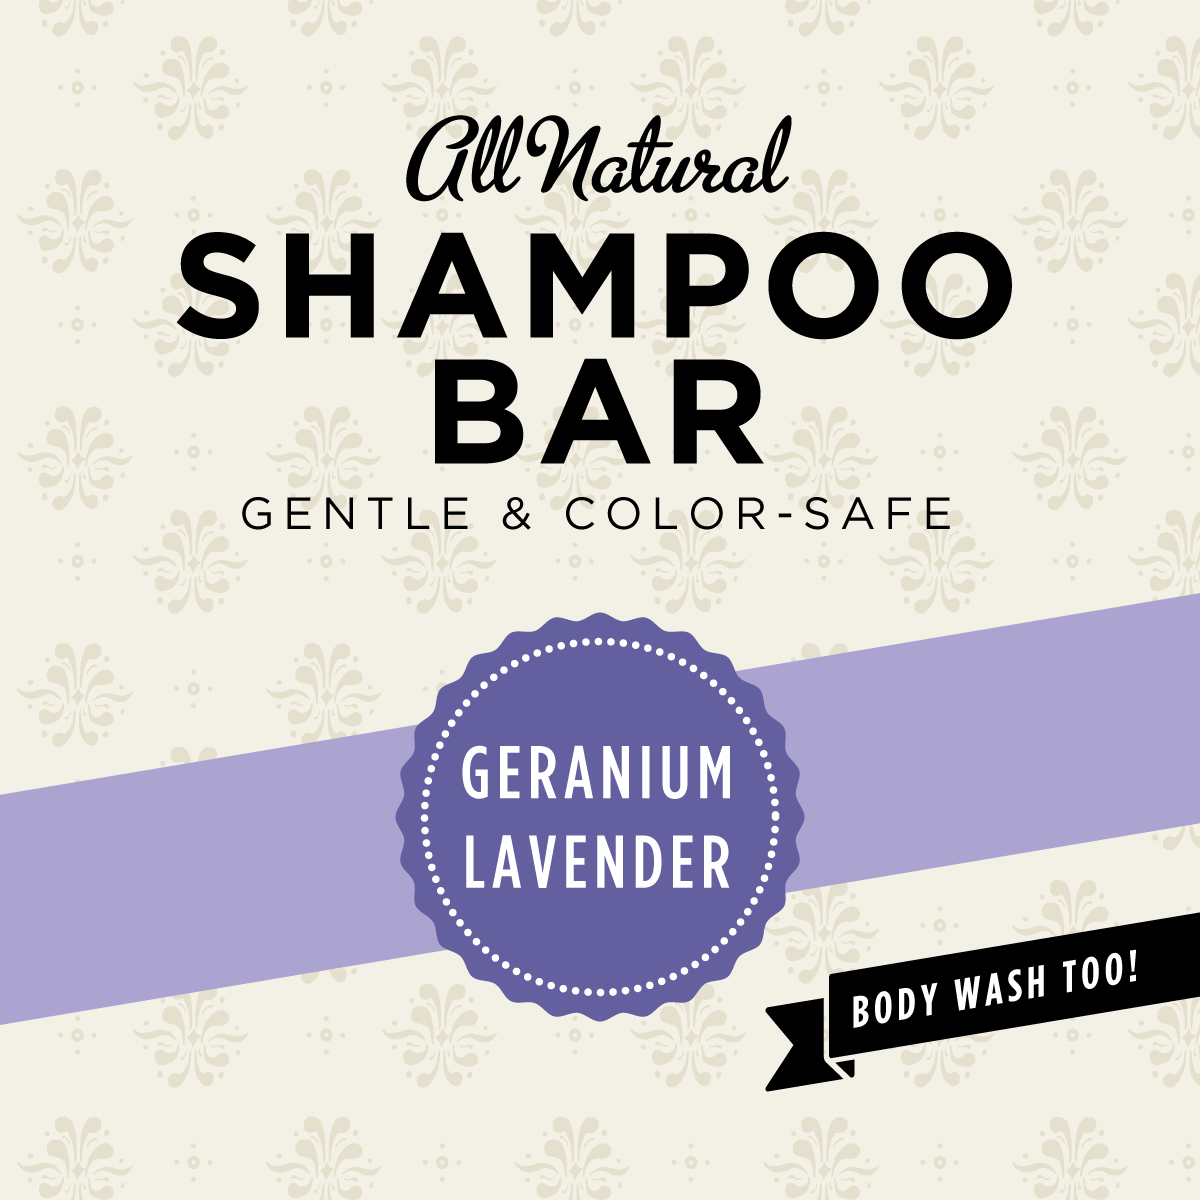 Geranium-Lavender Sulfate Free Shampoo Bar